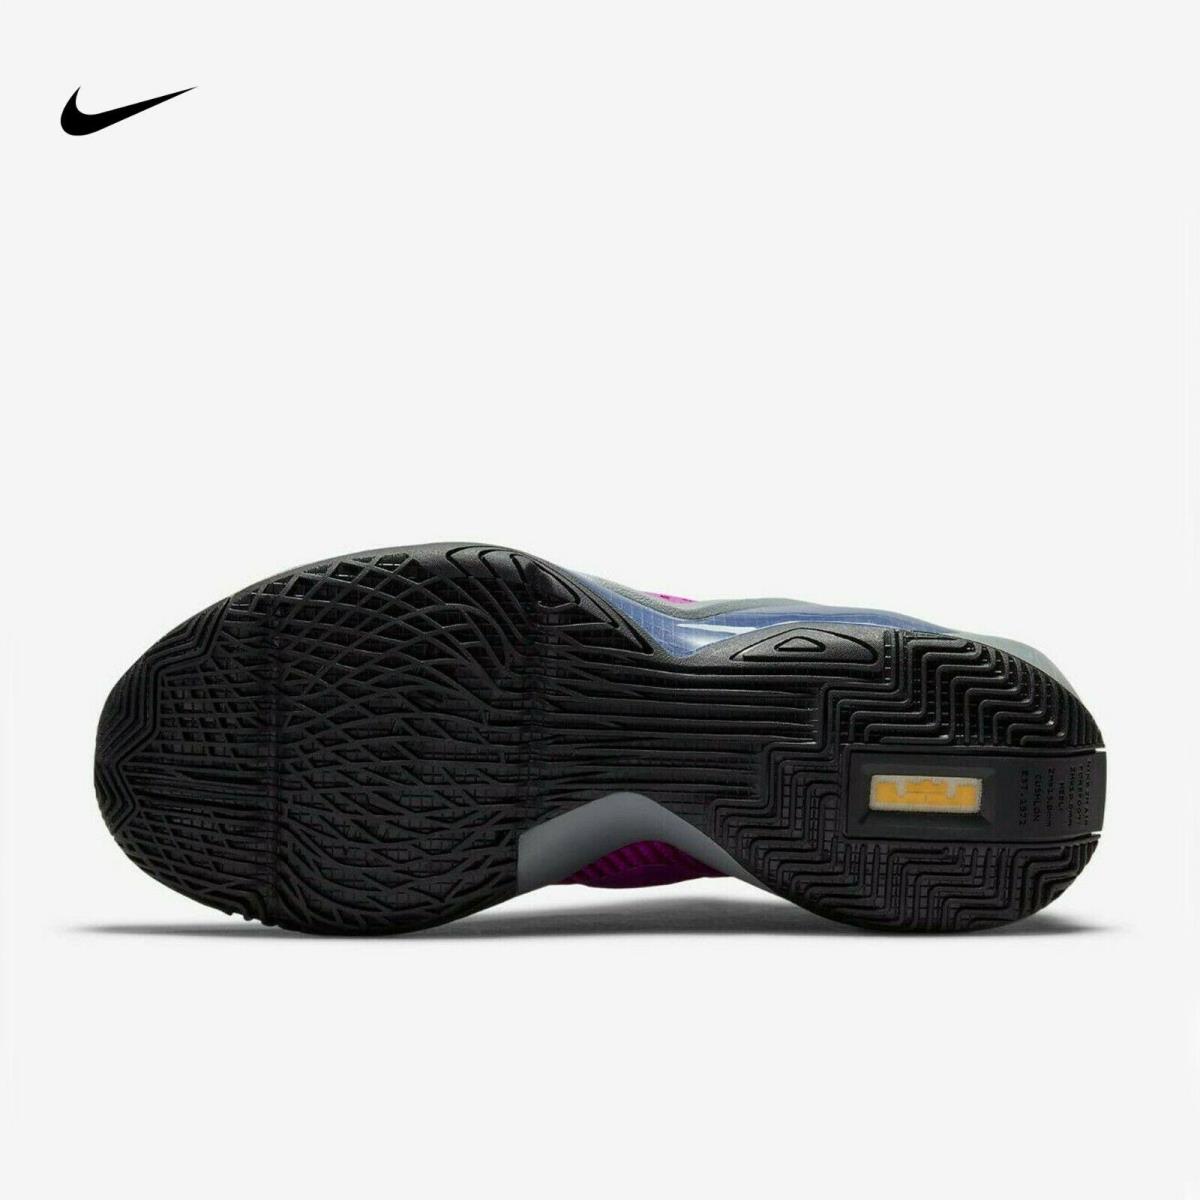 Nike shoes LeBron Soldier XIV - Yellow / Purple 4